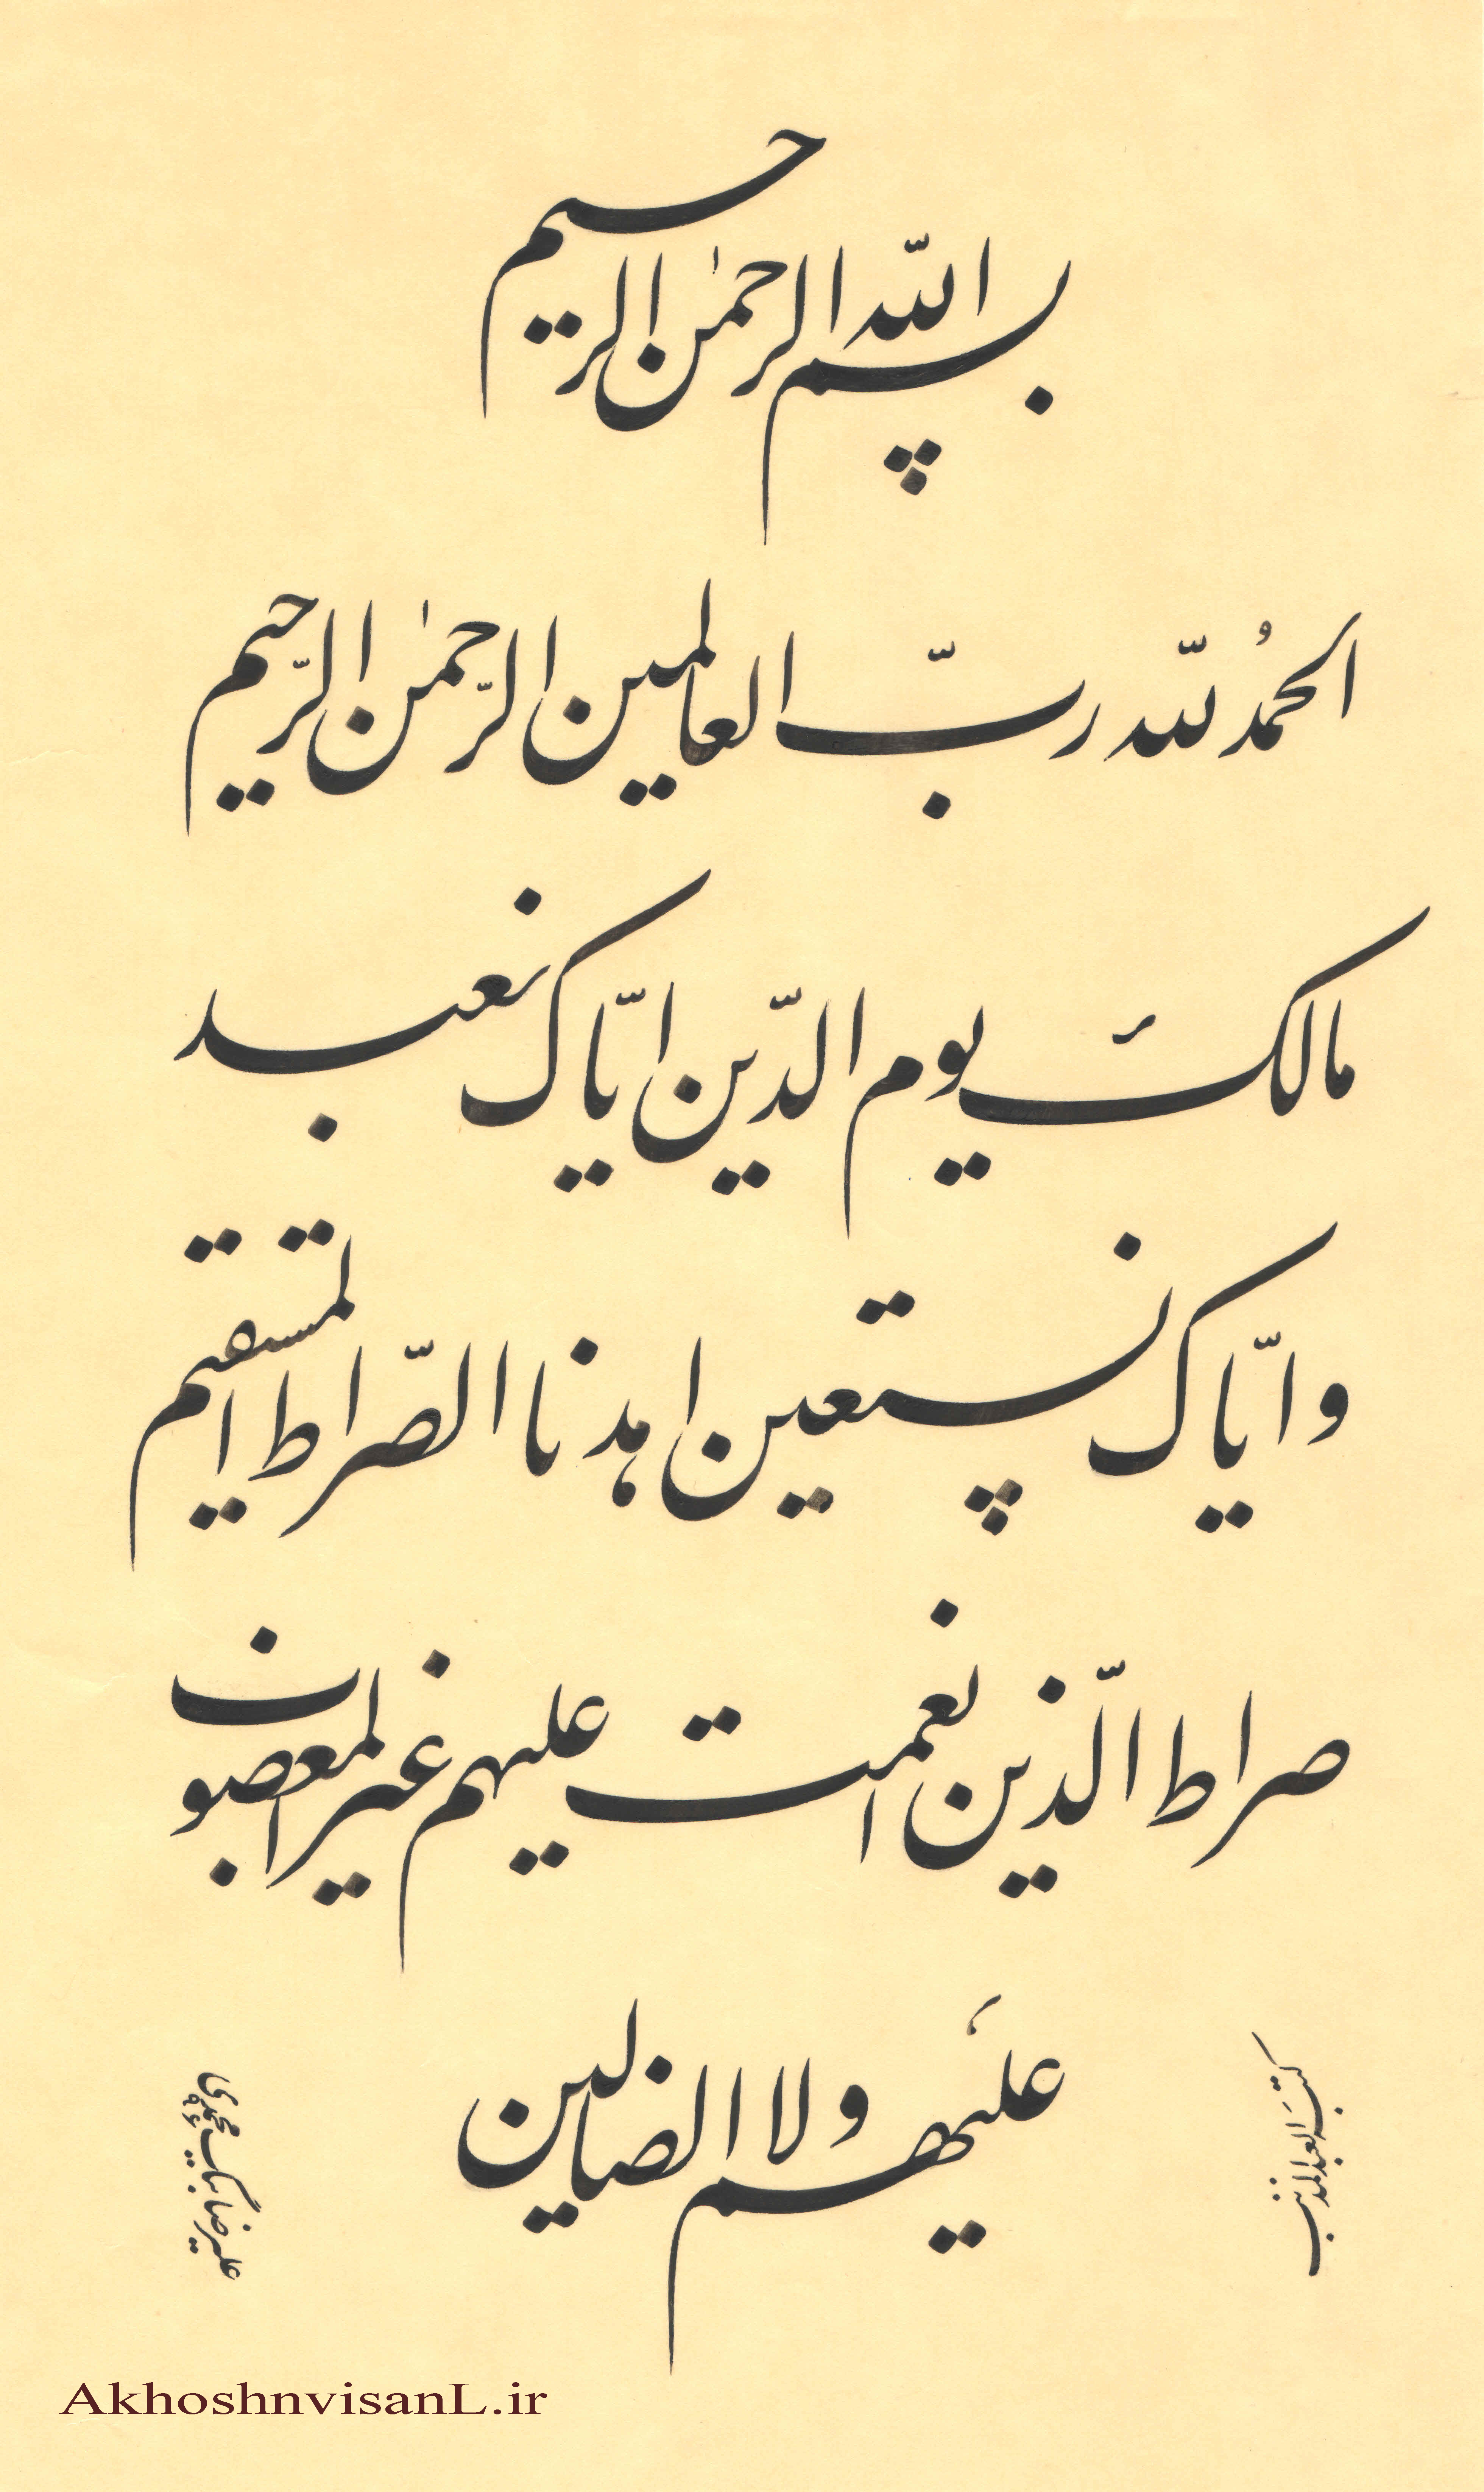 اثر بسیار زیبا از استاد علیرضا بیگ محمدی - 1396